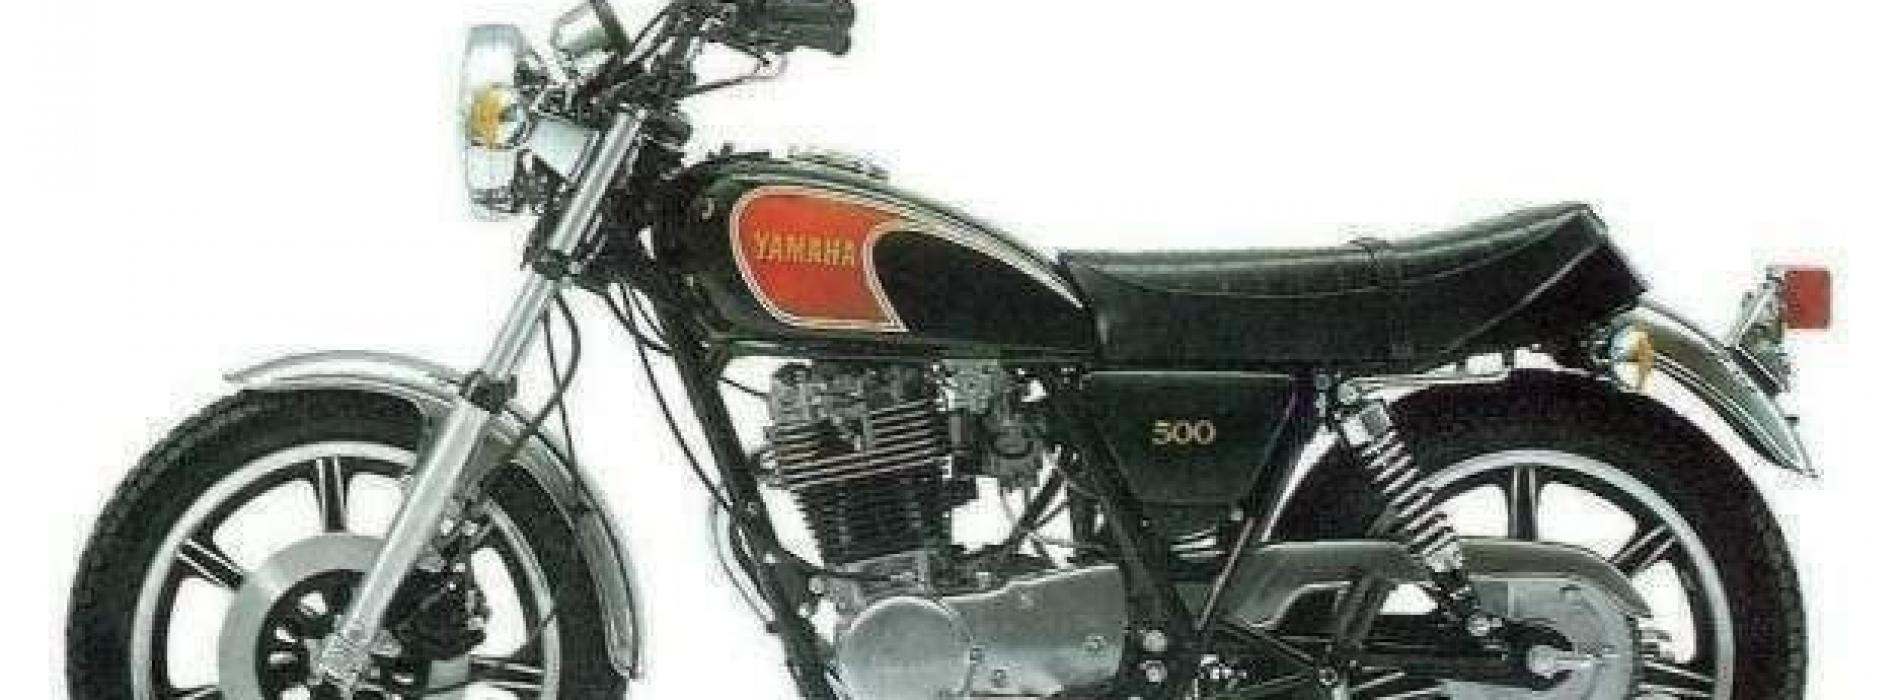 Ciclomotores e Motociclos que marcaram uma geração – Yamaha XT 500